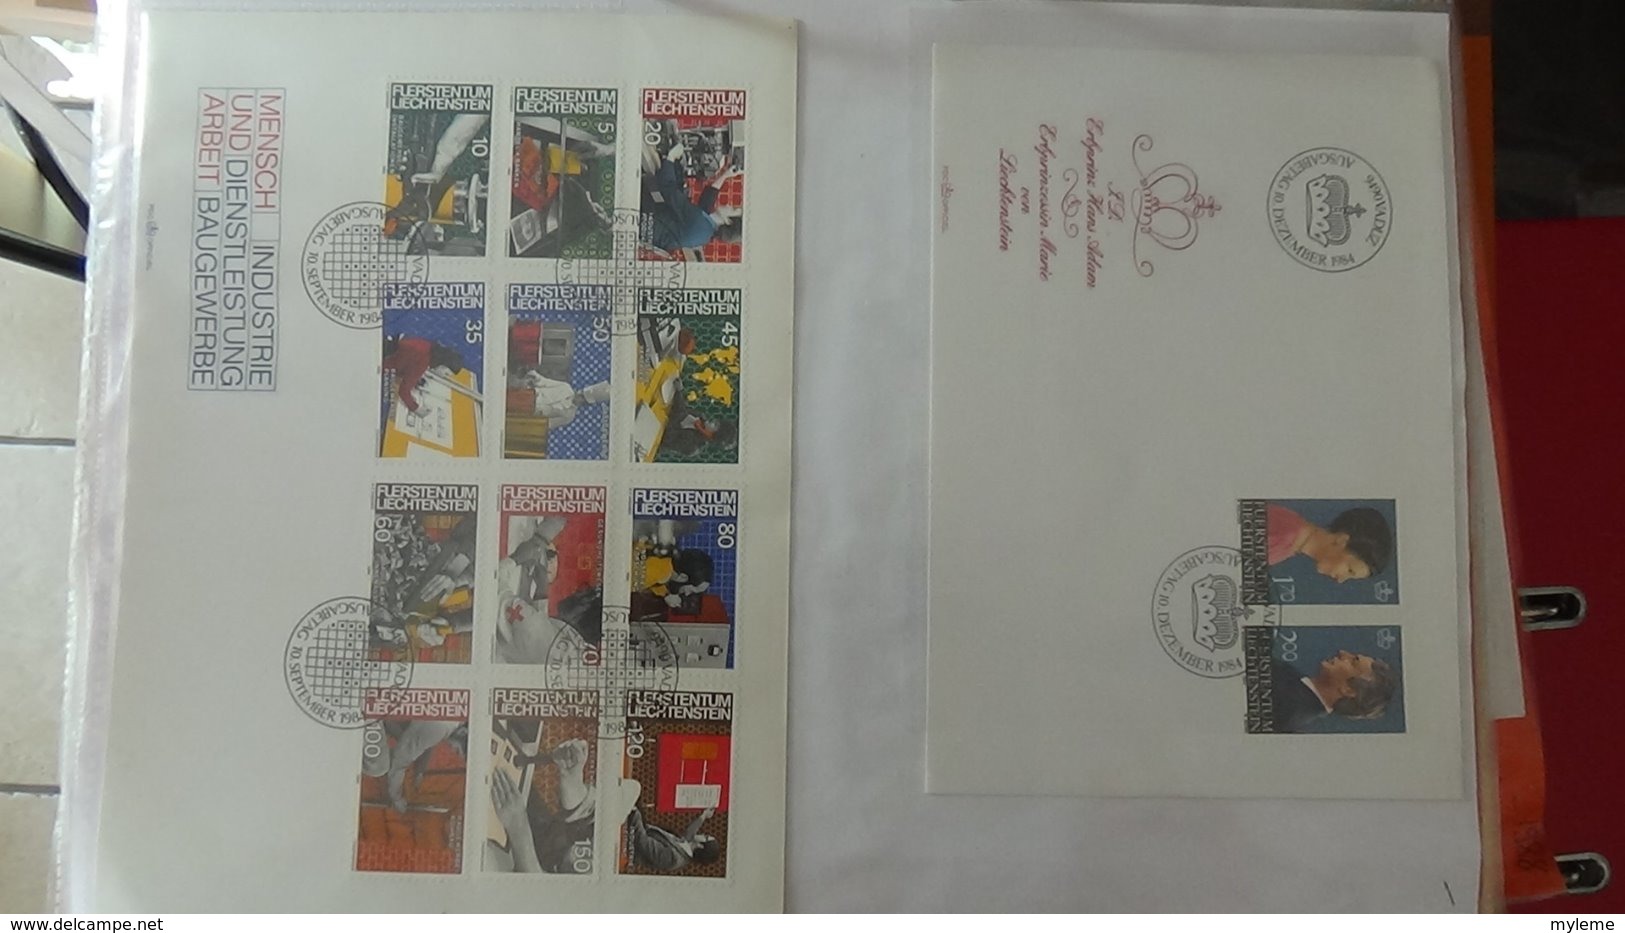 Dispersion d'une collection d'enveloppe 1er jour et autres dont 120 du LIECHTENSTEIN entre 1982 et 1992